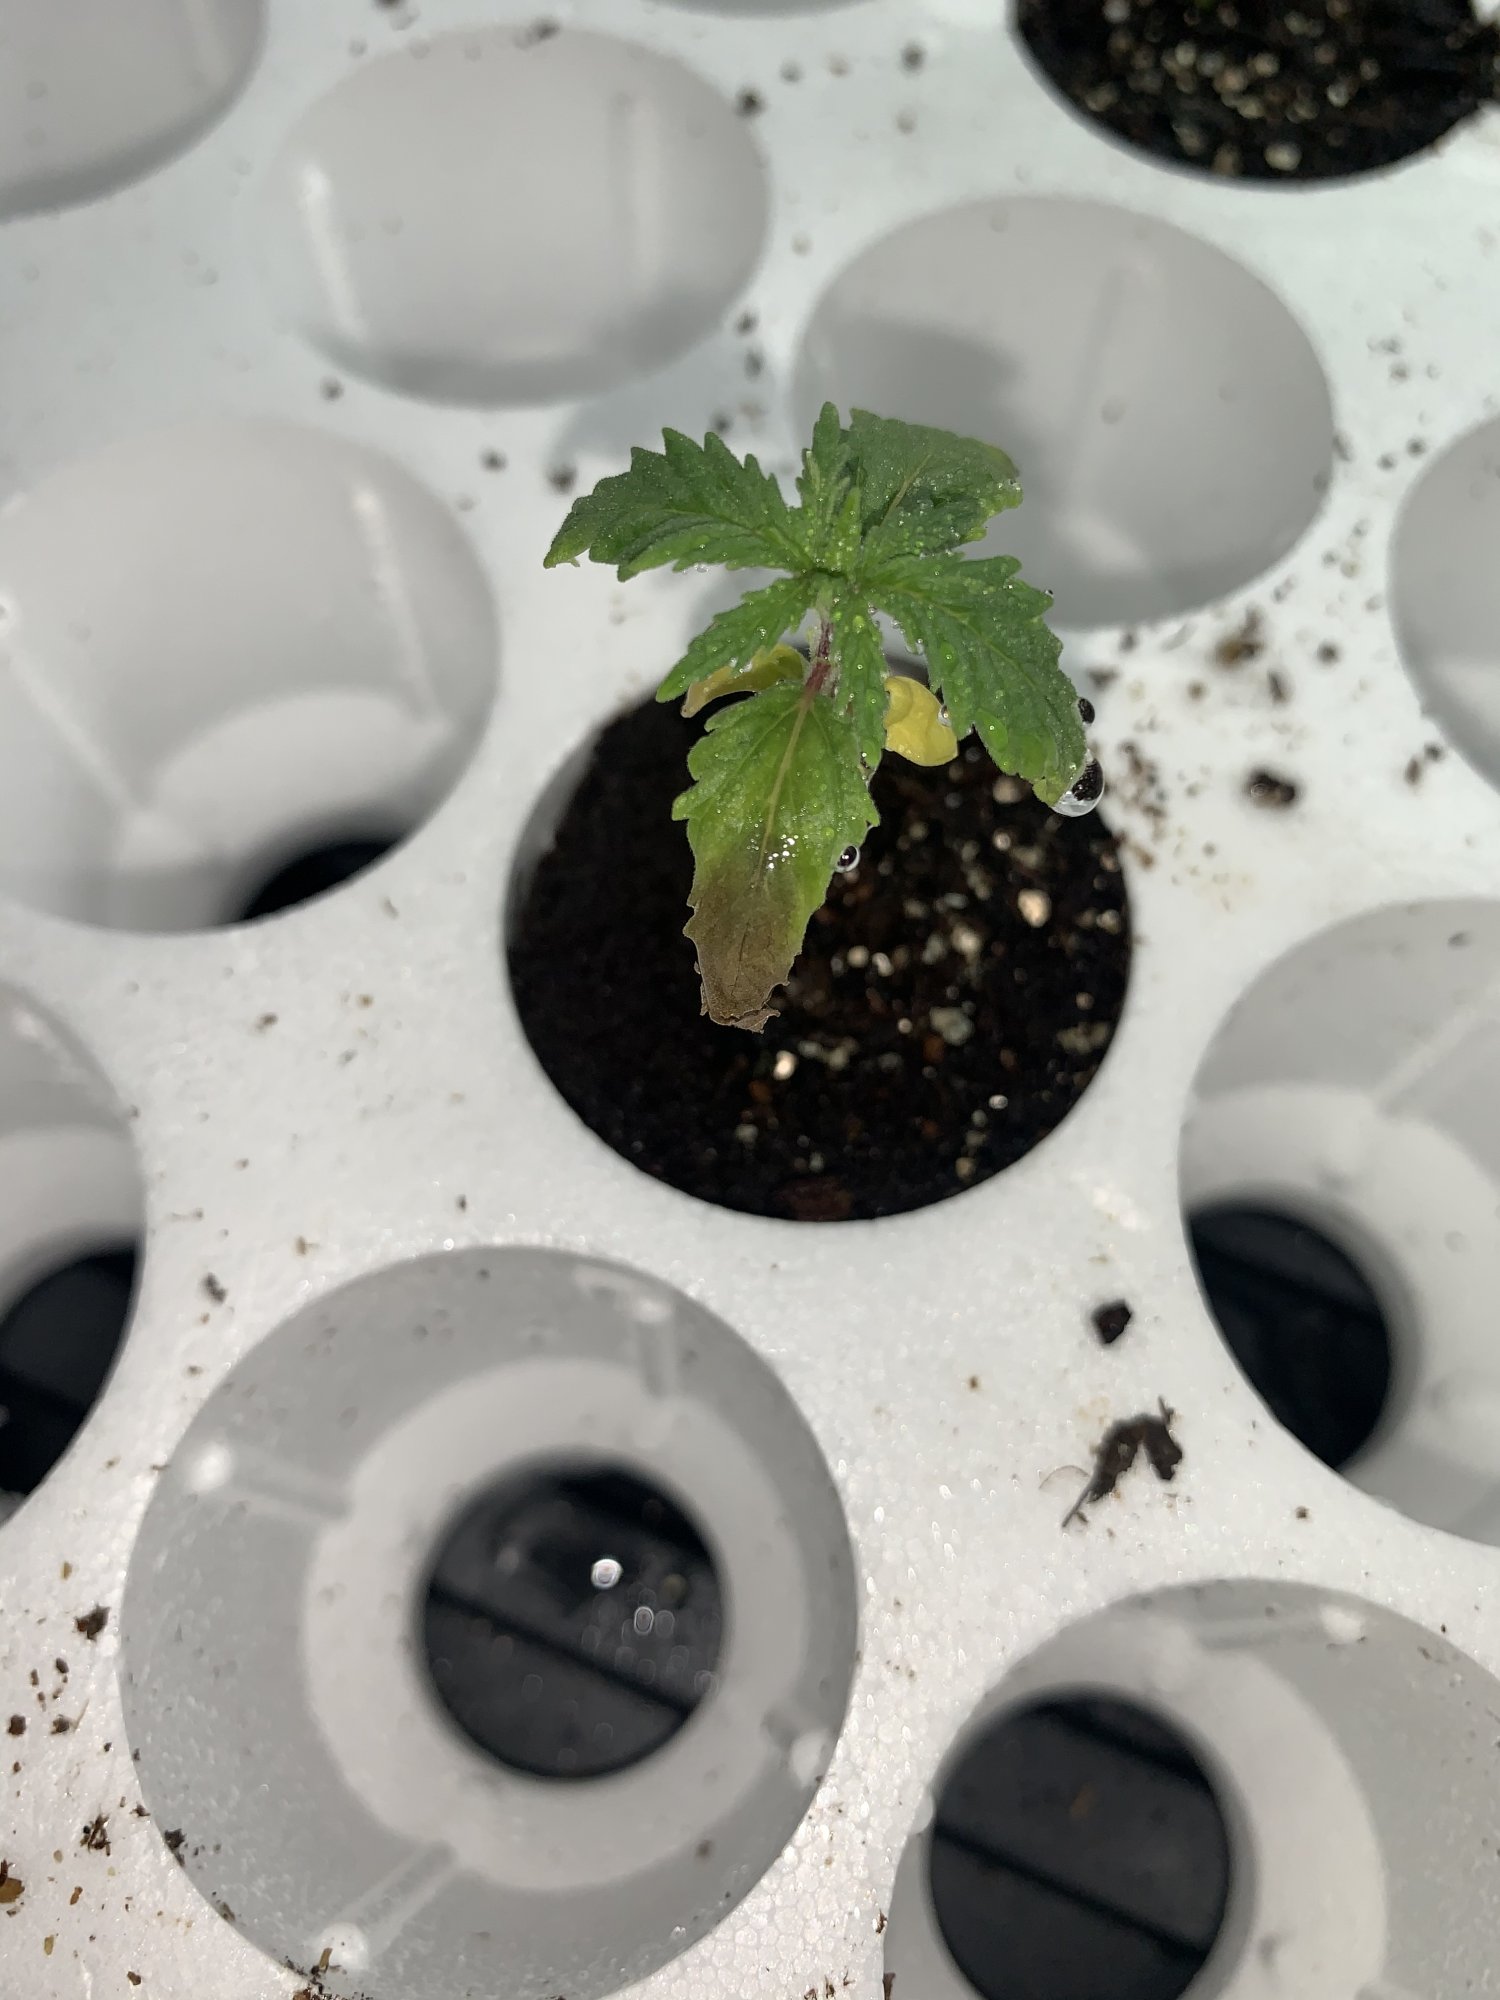 my-seedling-has-a-dark-spot-on-a-leaf.jpeg